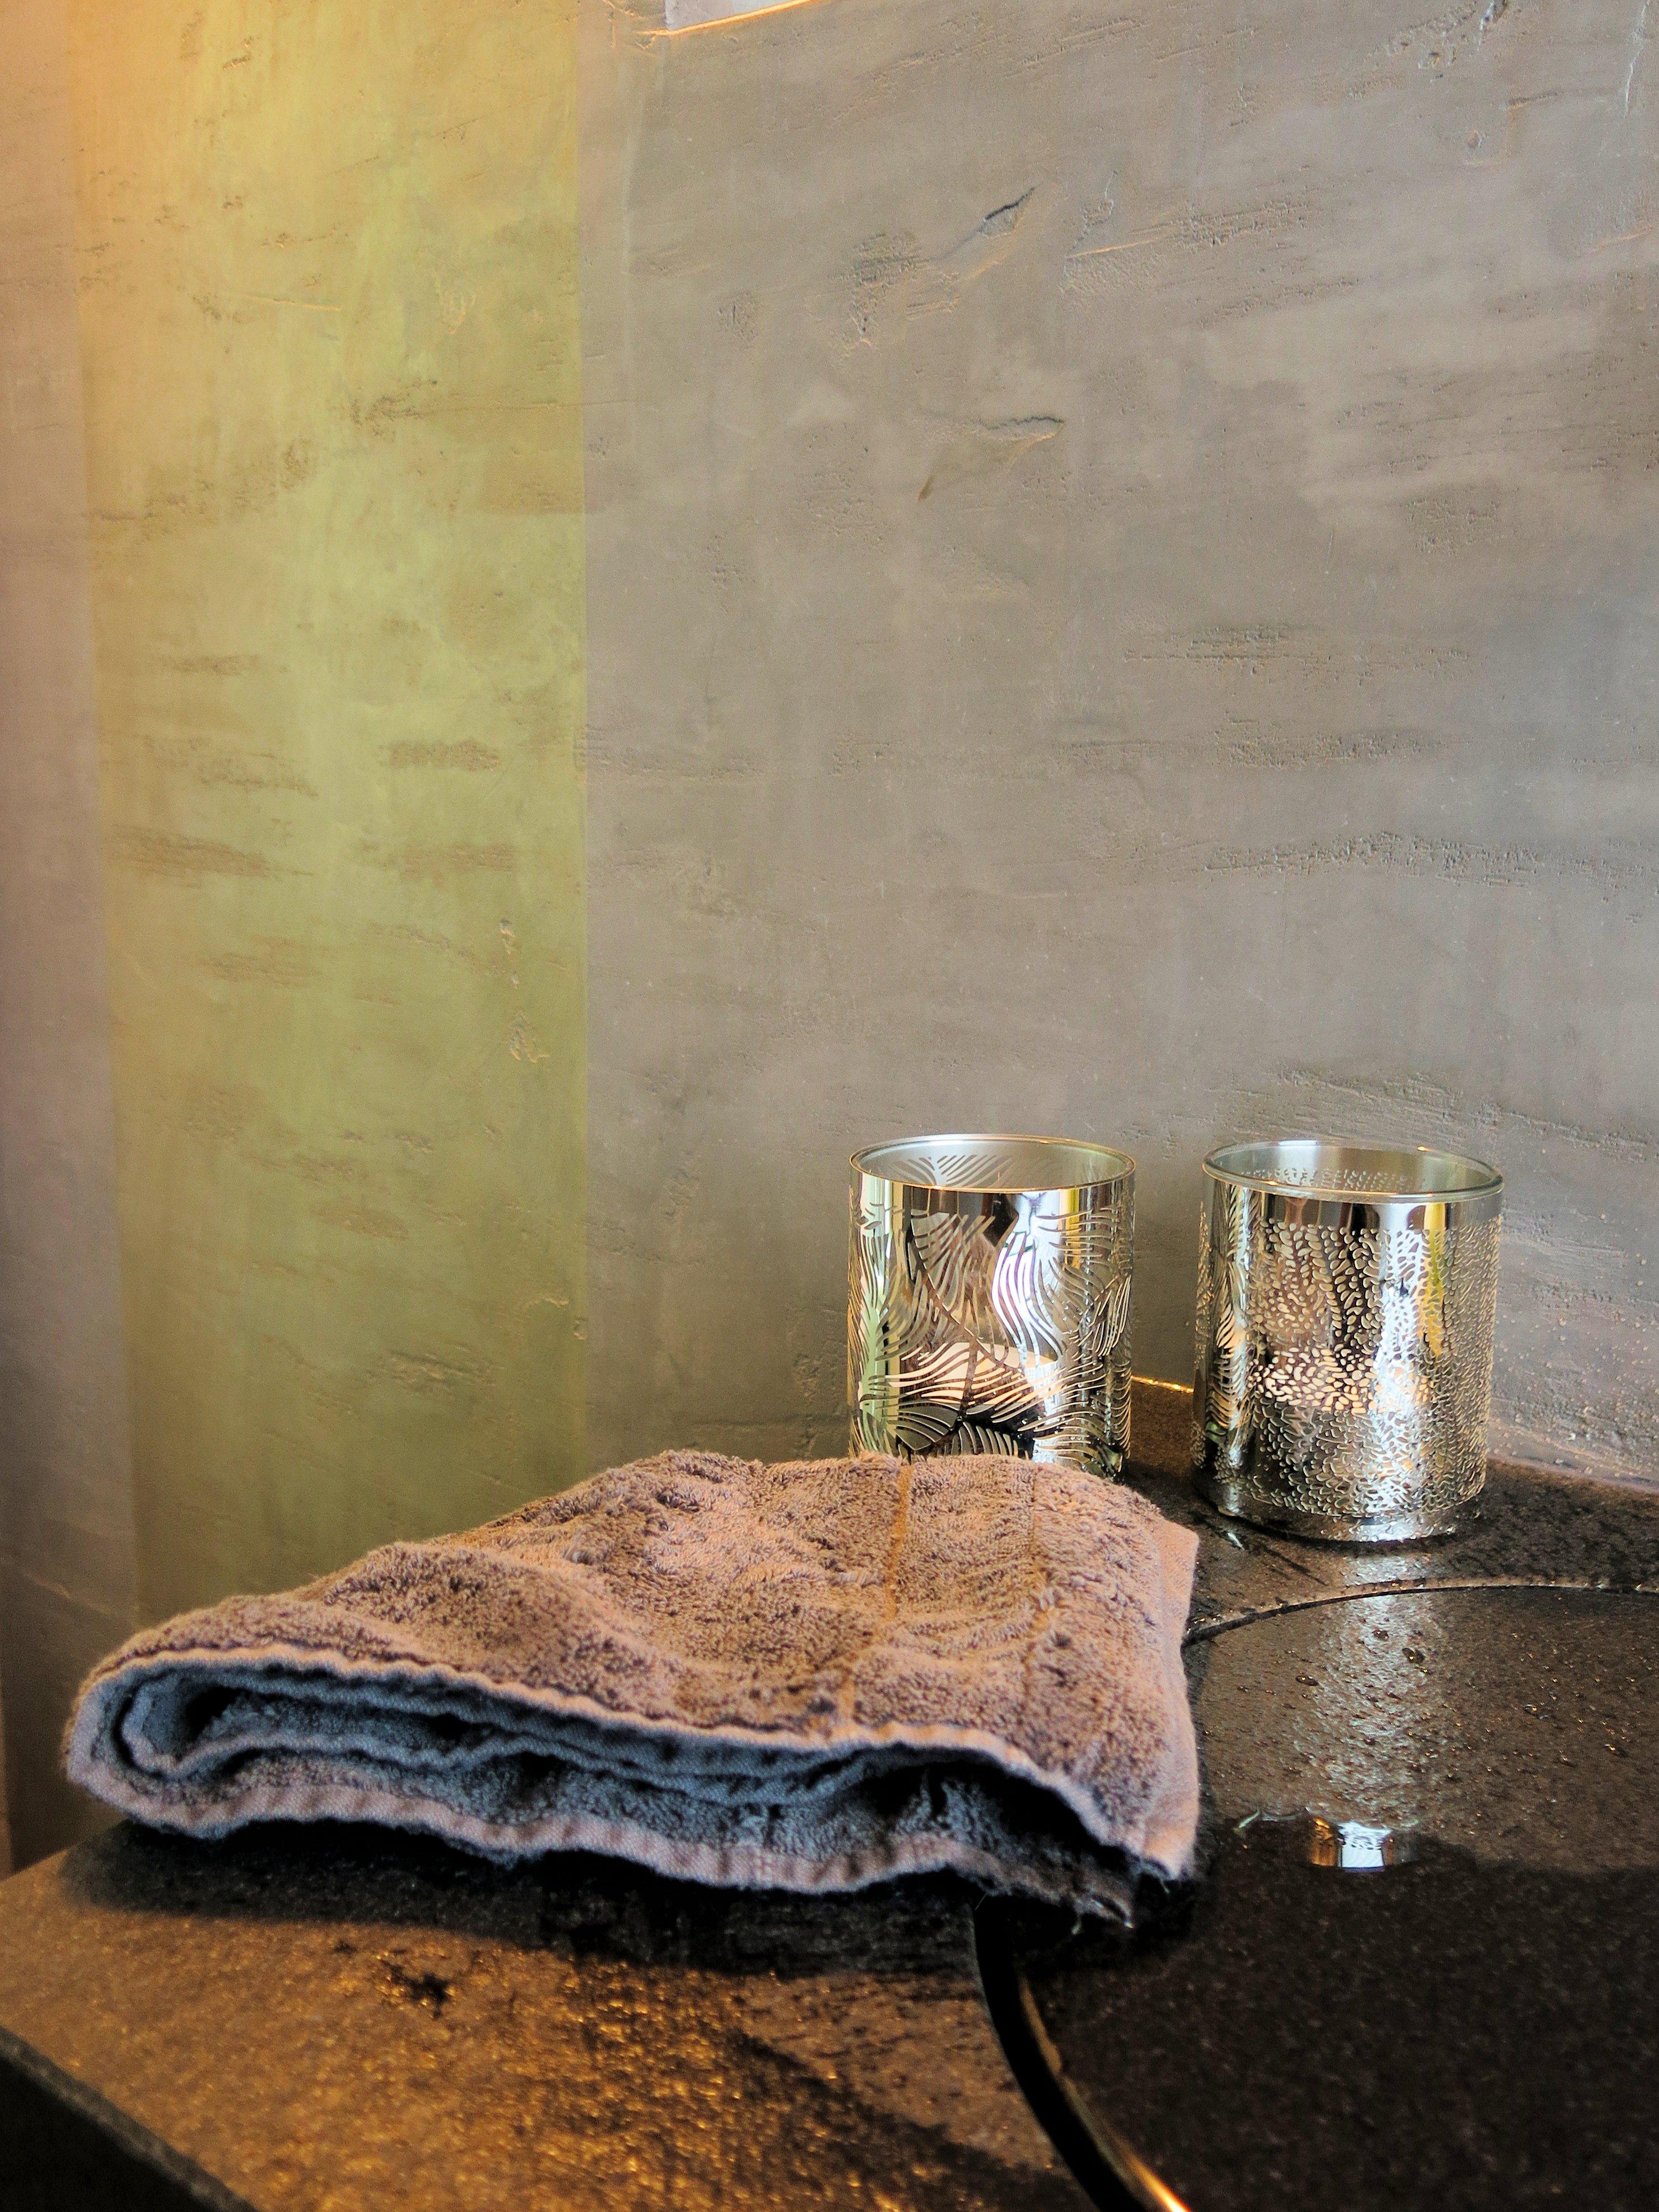 Luxus Badezimmer #grauewandgestaltung #luxusbadezimmer ©www.wandmanufaktur.de